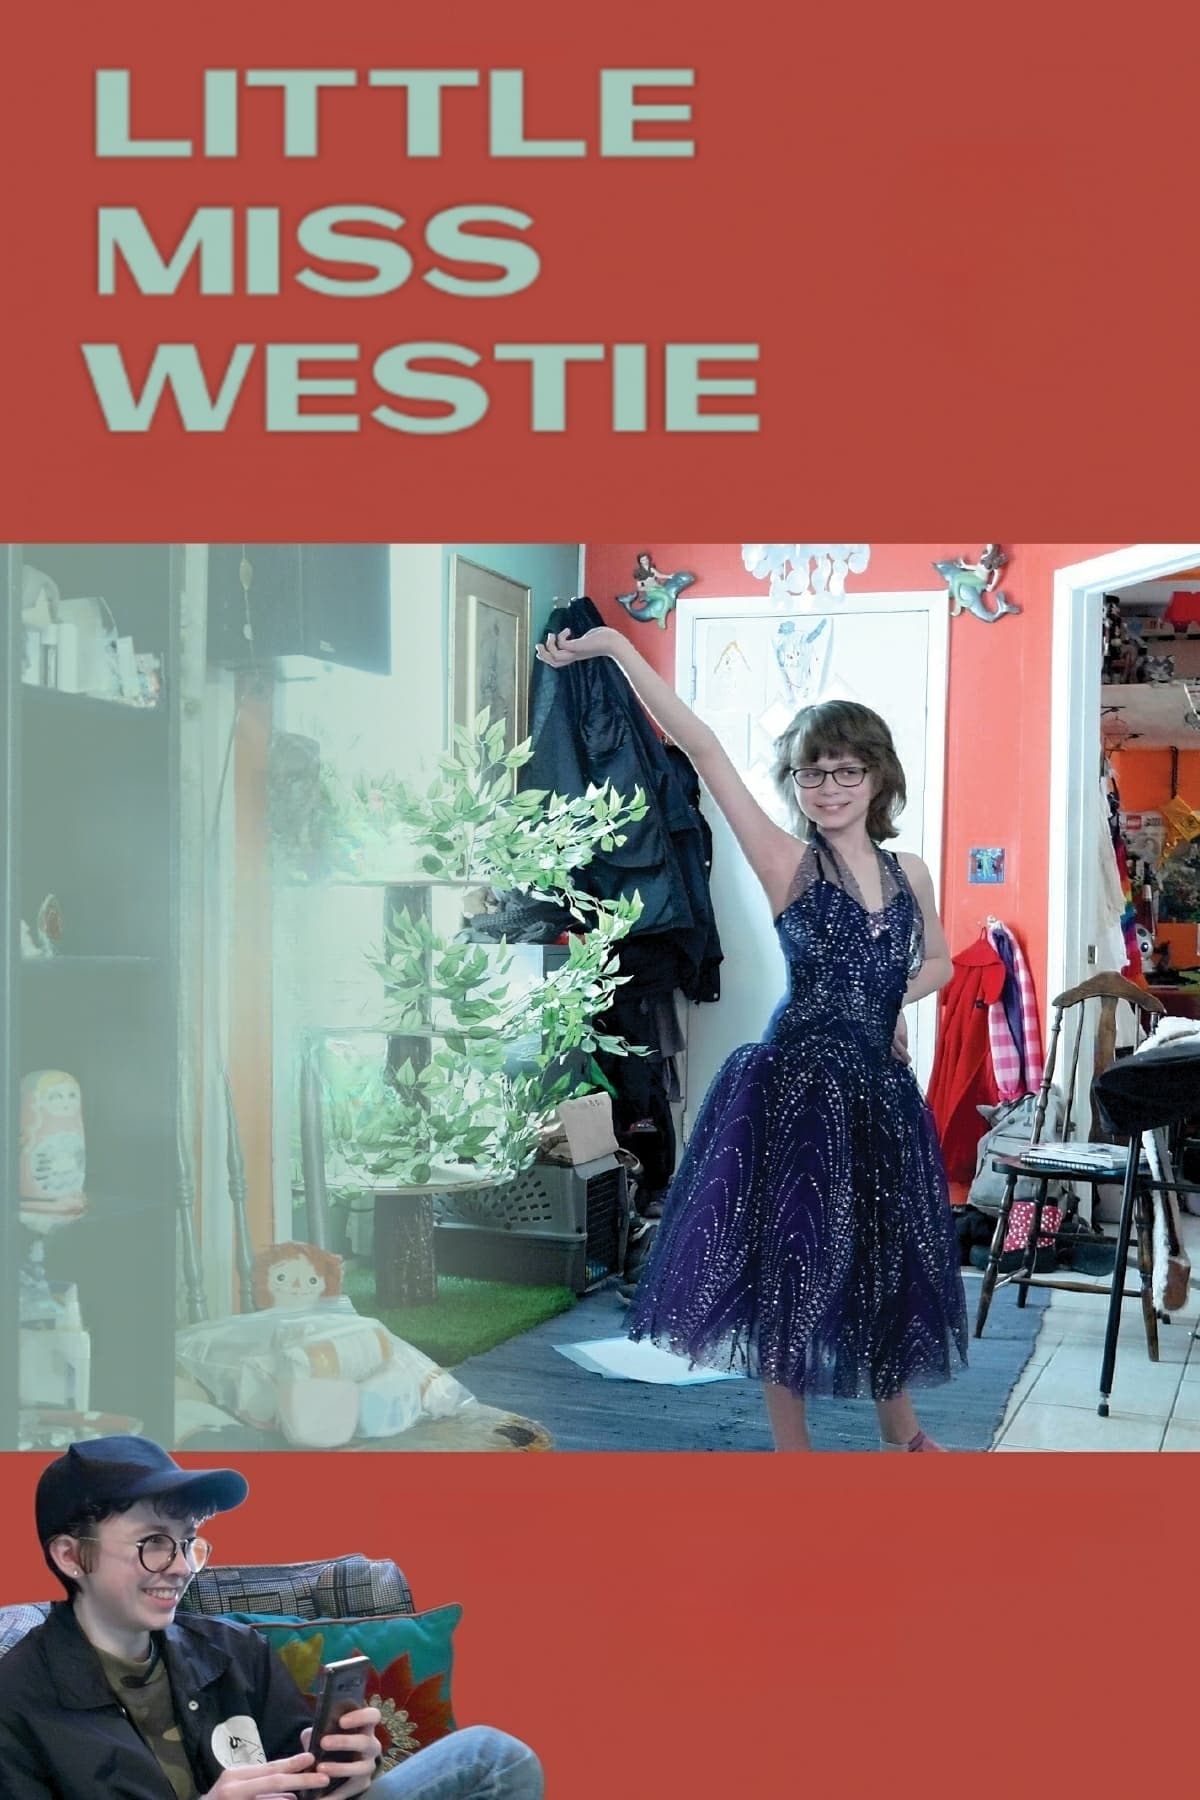 Little Miss Westie